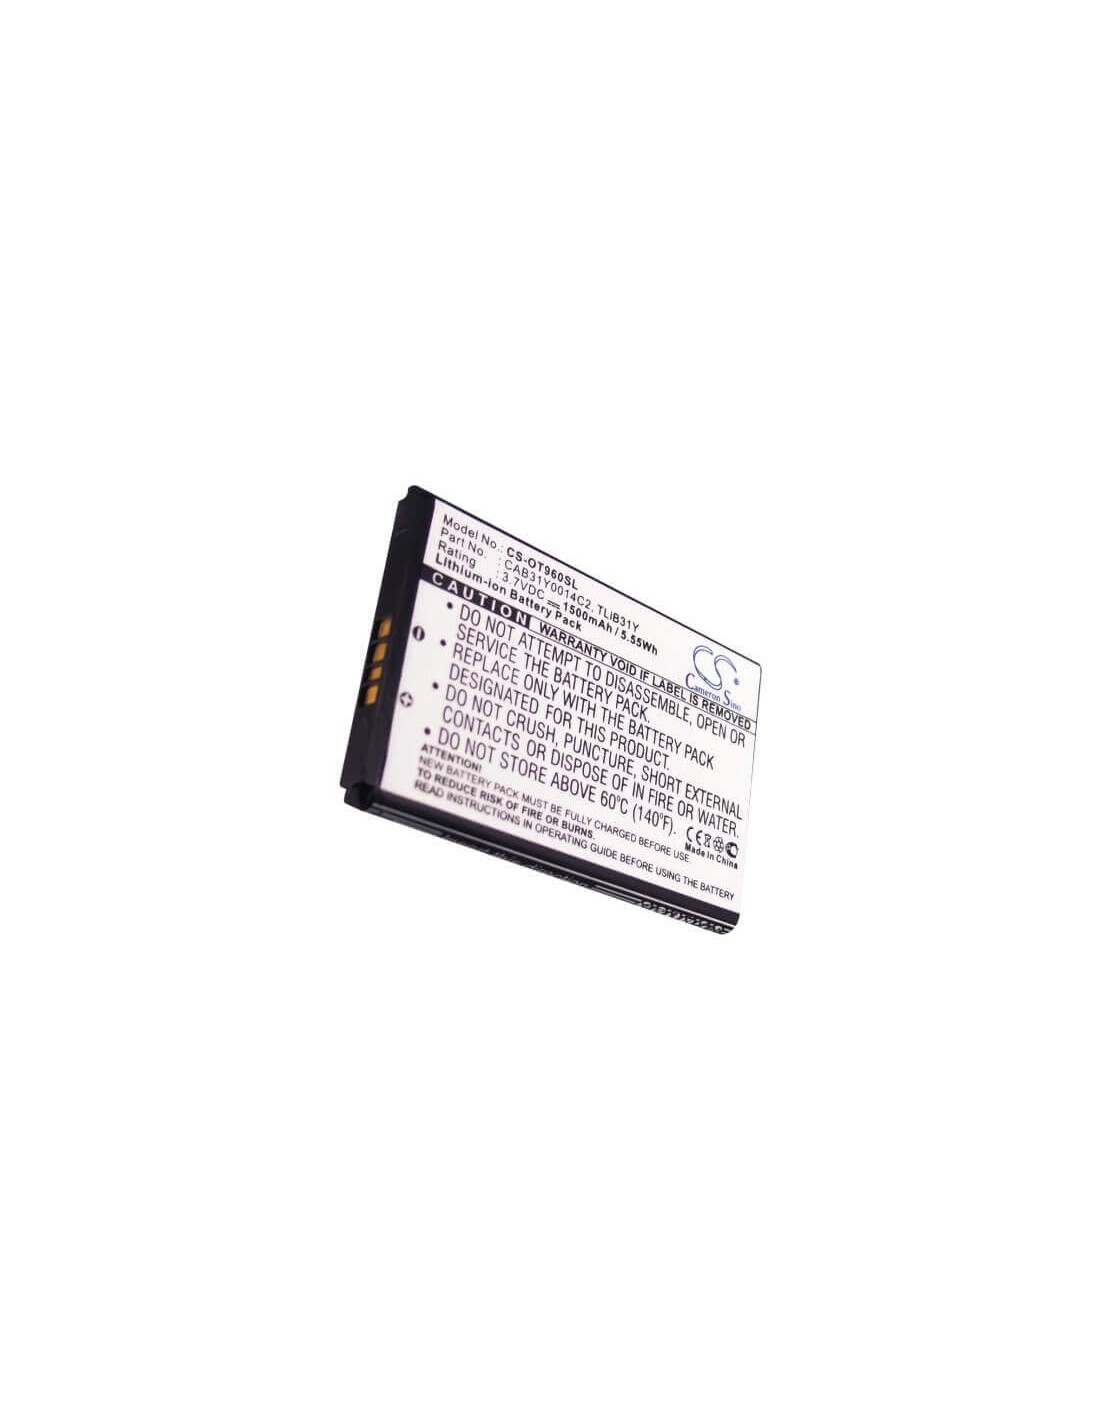 Battery for Alcatel OT-960, OT-960C, AUTHORITY 3.7V, 1500mAh - 5.55Wh